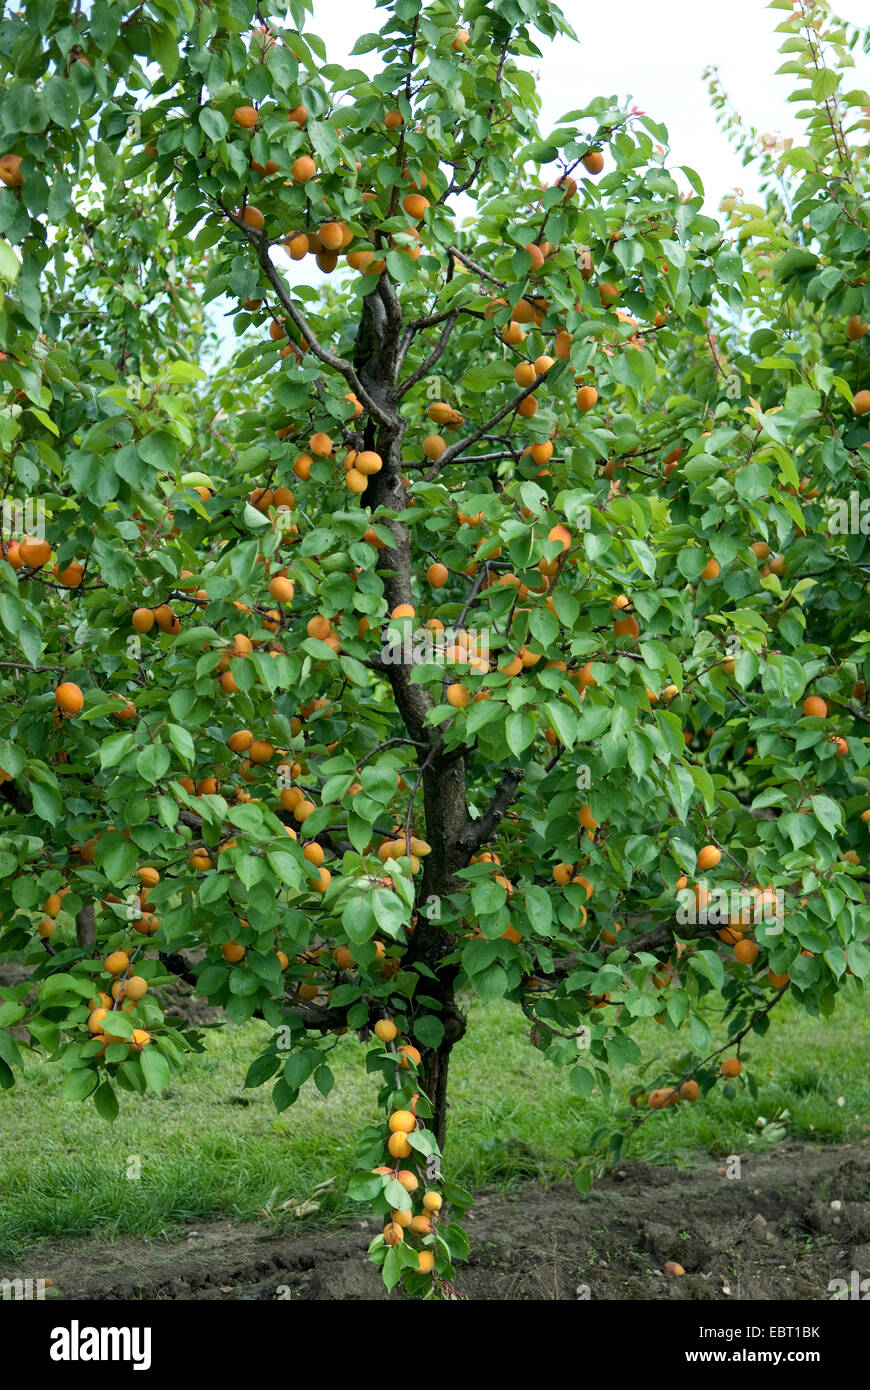 Aprikosenbaum (Prunus Armeniaca "Goldrich', Prunus Armeniaca Goldrich), Sorte Goldrich, Aprikosen auf einem Baum Stockfoto